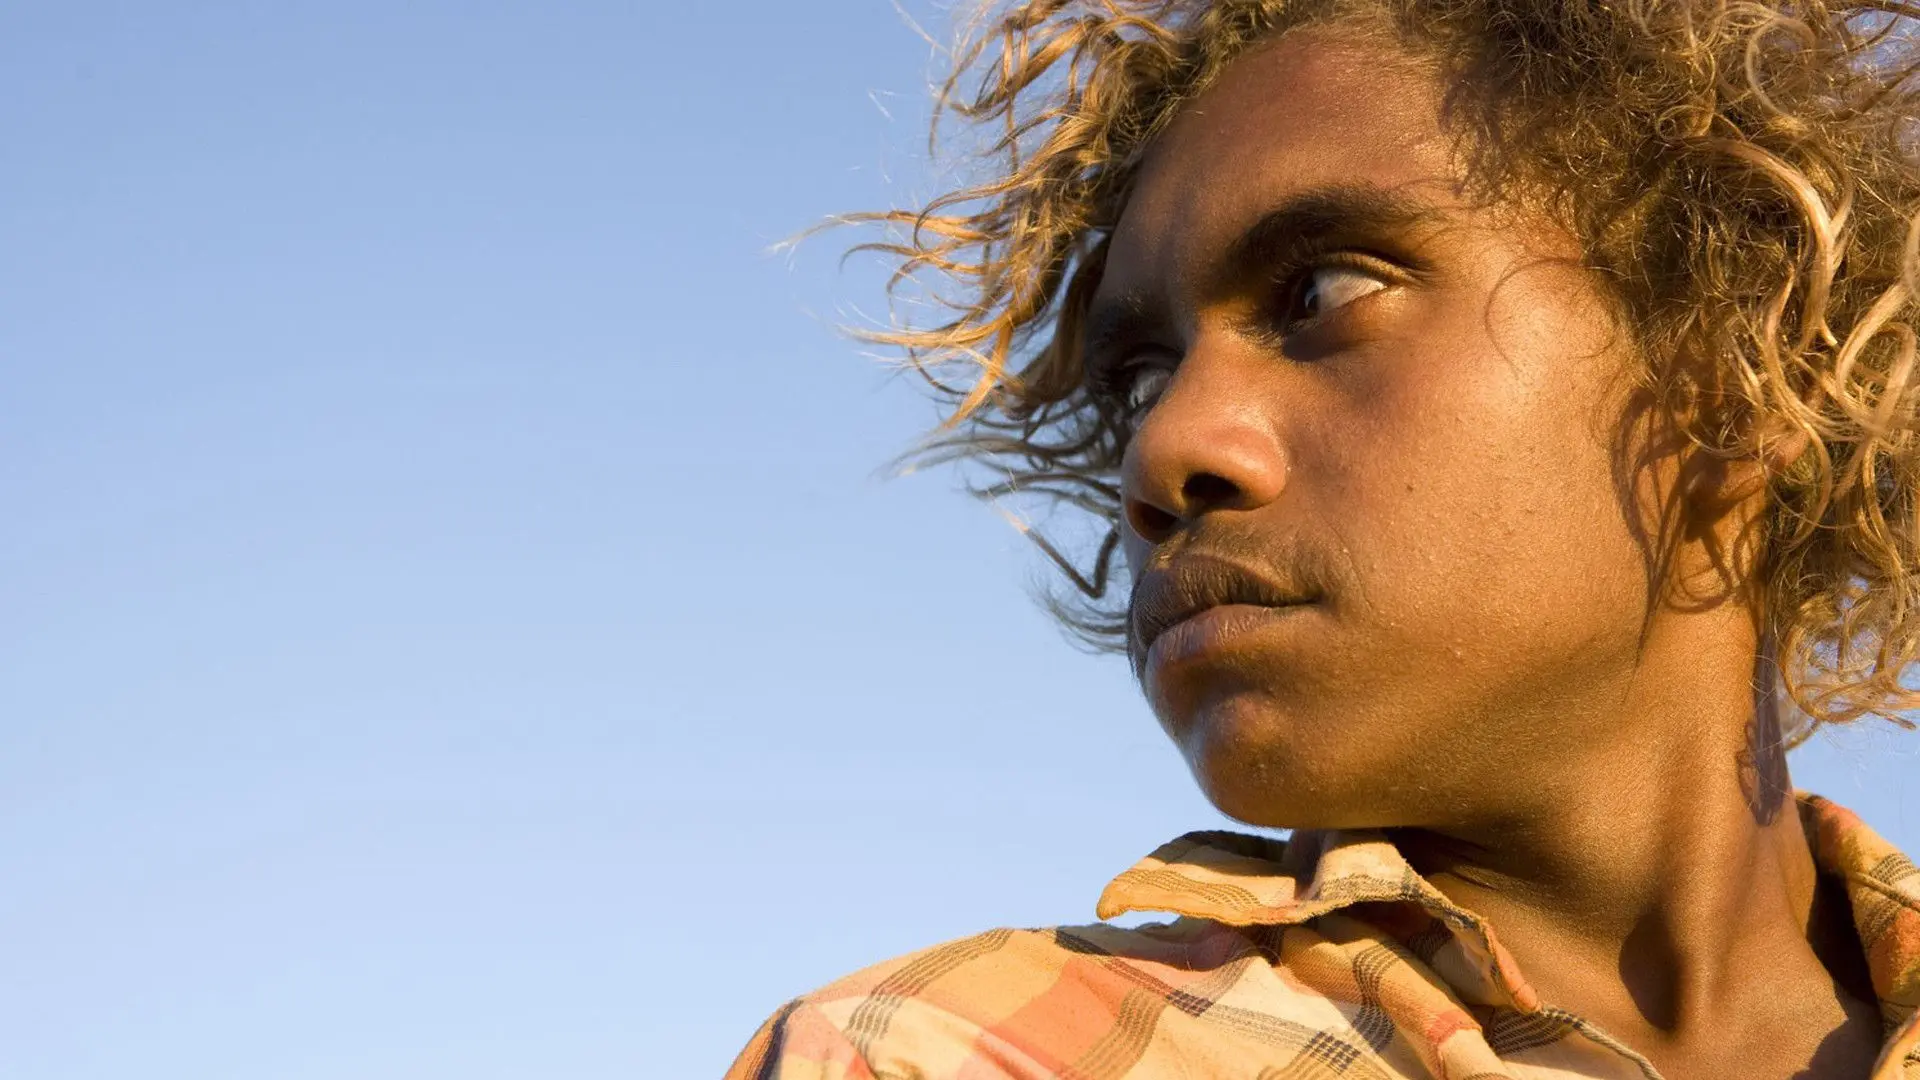 En Australie, l’ONU dénonce le racisme envers les Aborigènes